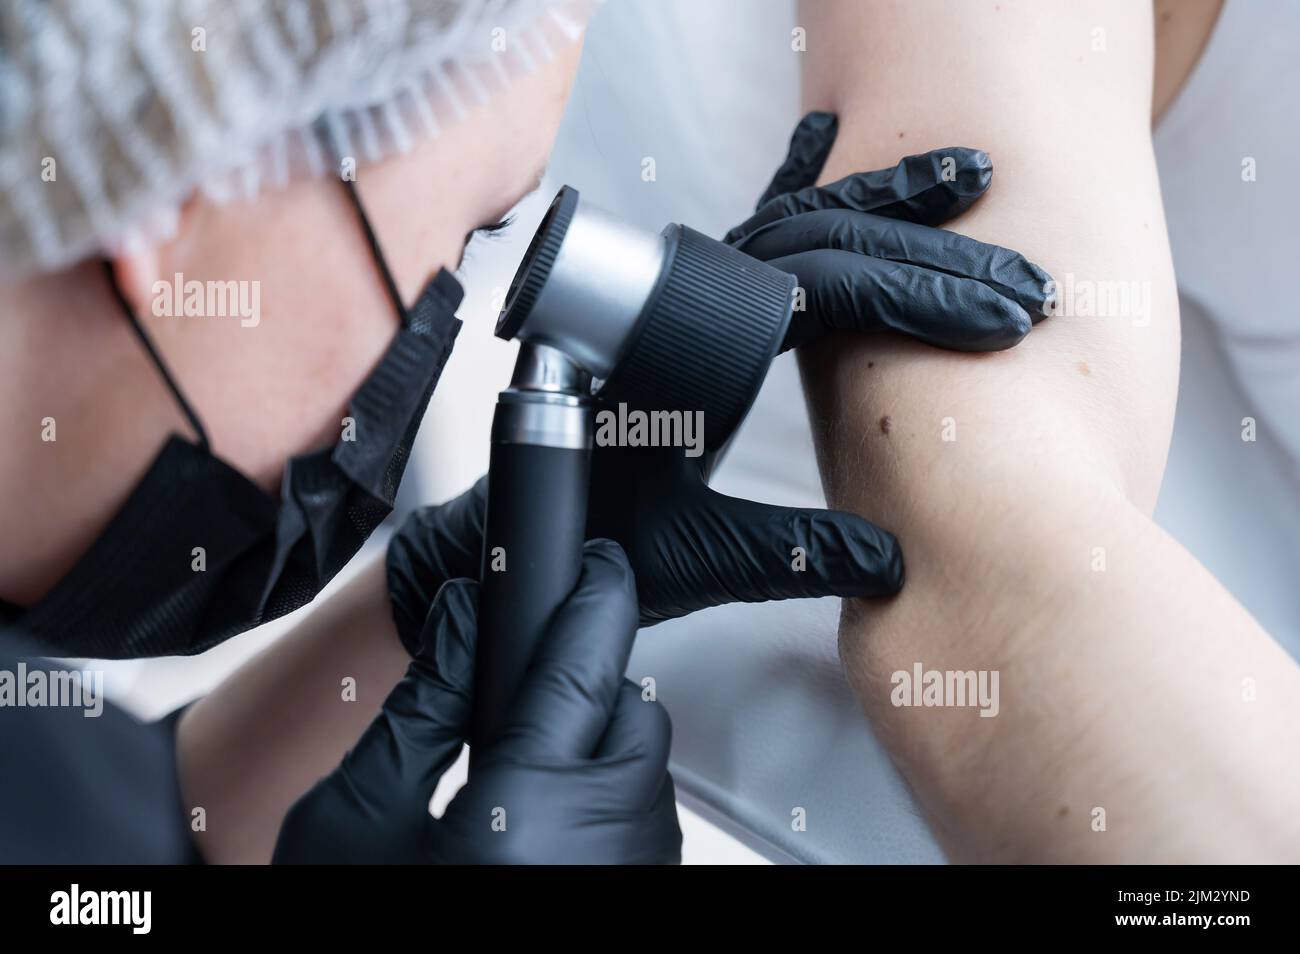 Un dermatologo esamina la talpa di un paziente attraverso un dermatoscopio. Foto Stock